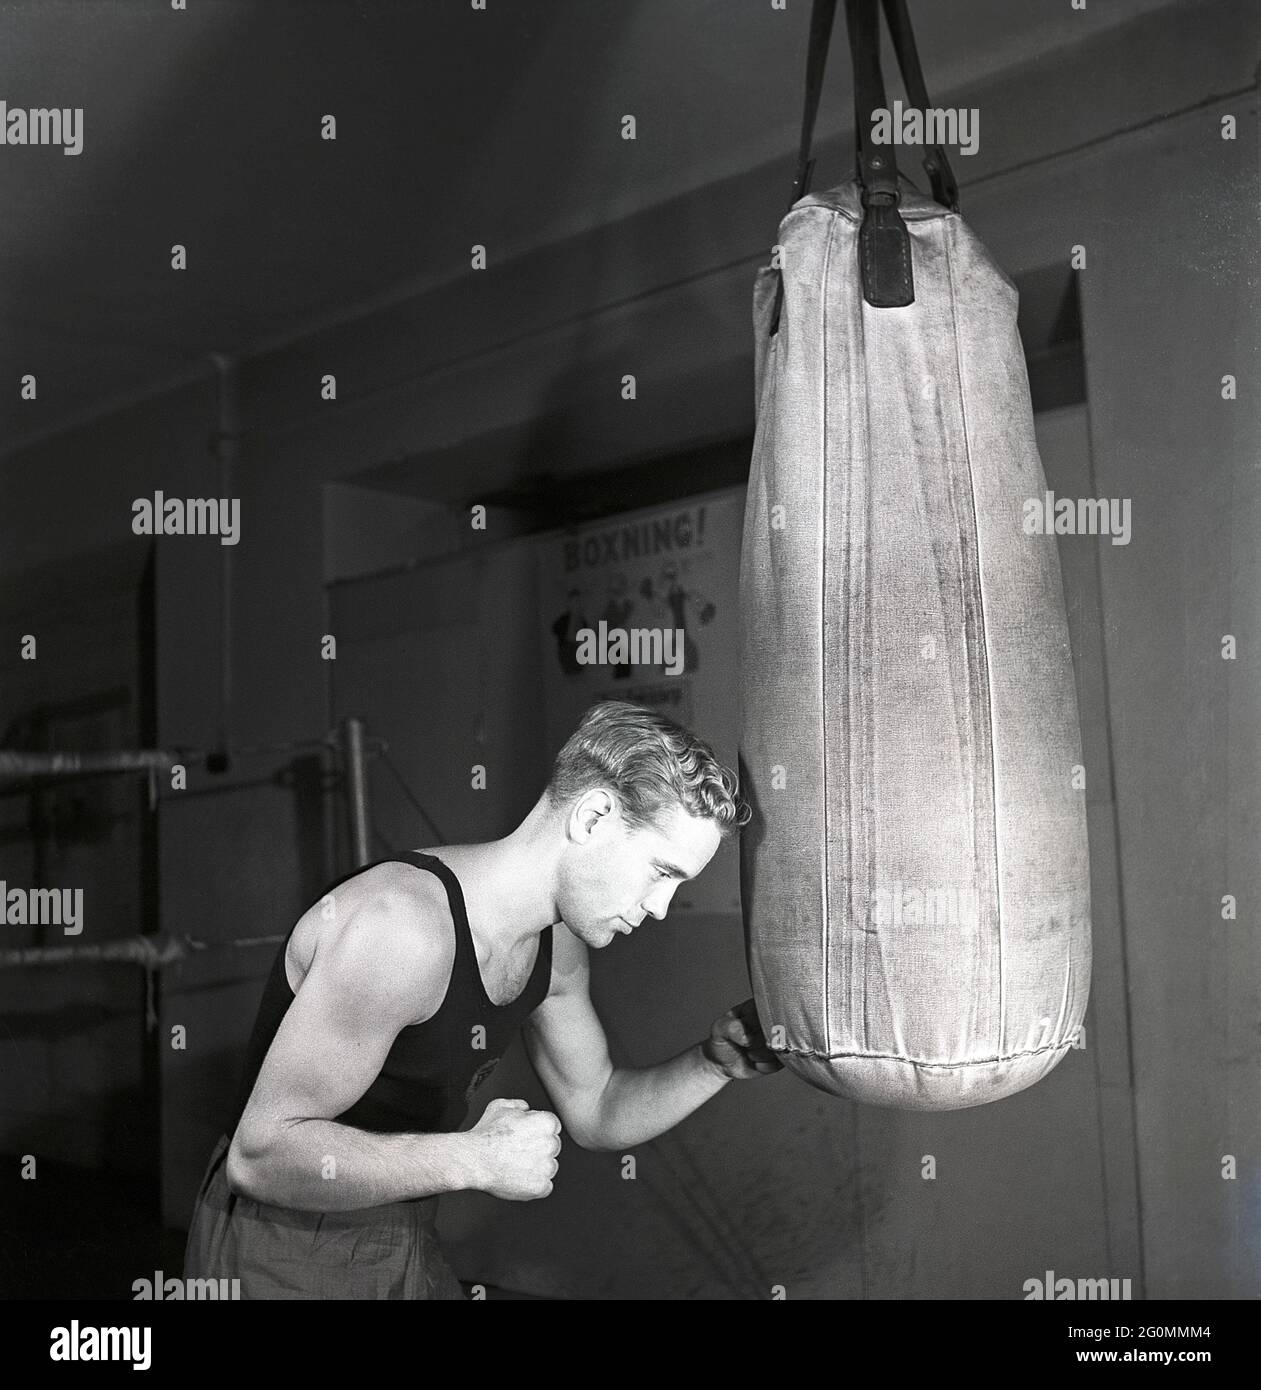 Boxer negli anni '40. Un giovane che lavora fuori durante l'addestramento di boxe. Viene raffigurato pugilato il sandbag appeso al tetto, un modo tradizionale di addestramento alla boxe. Svezia 1944 rif. K115-3 Foto Stock